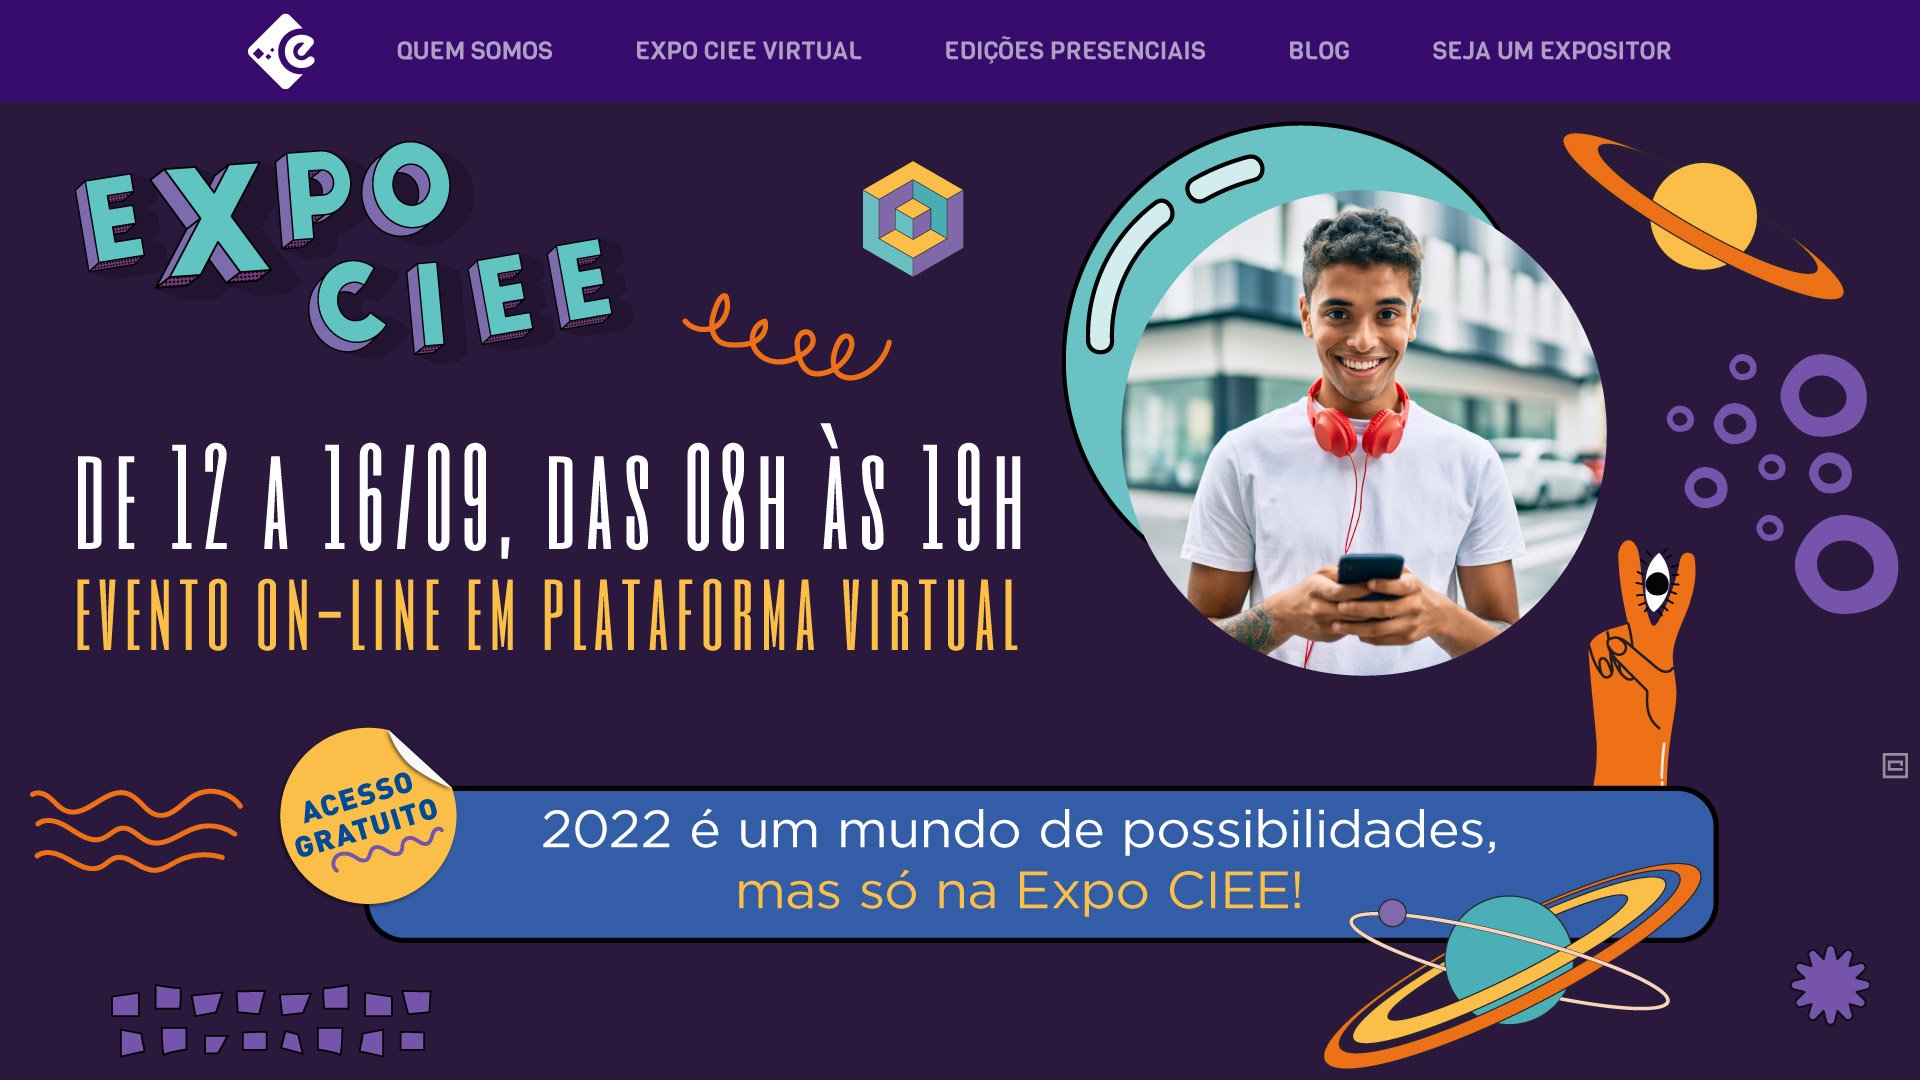 Expo CIEE Virtual